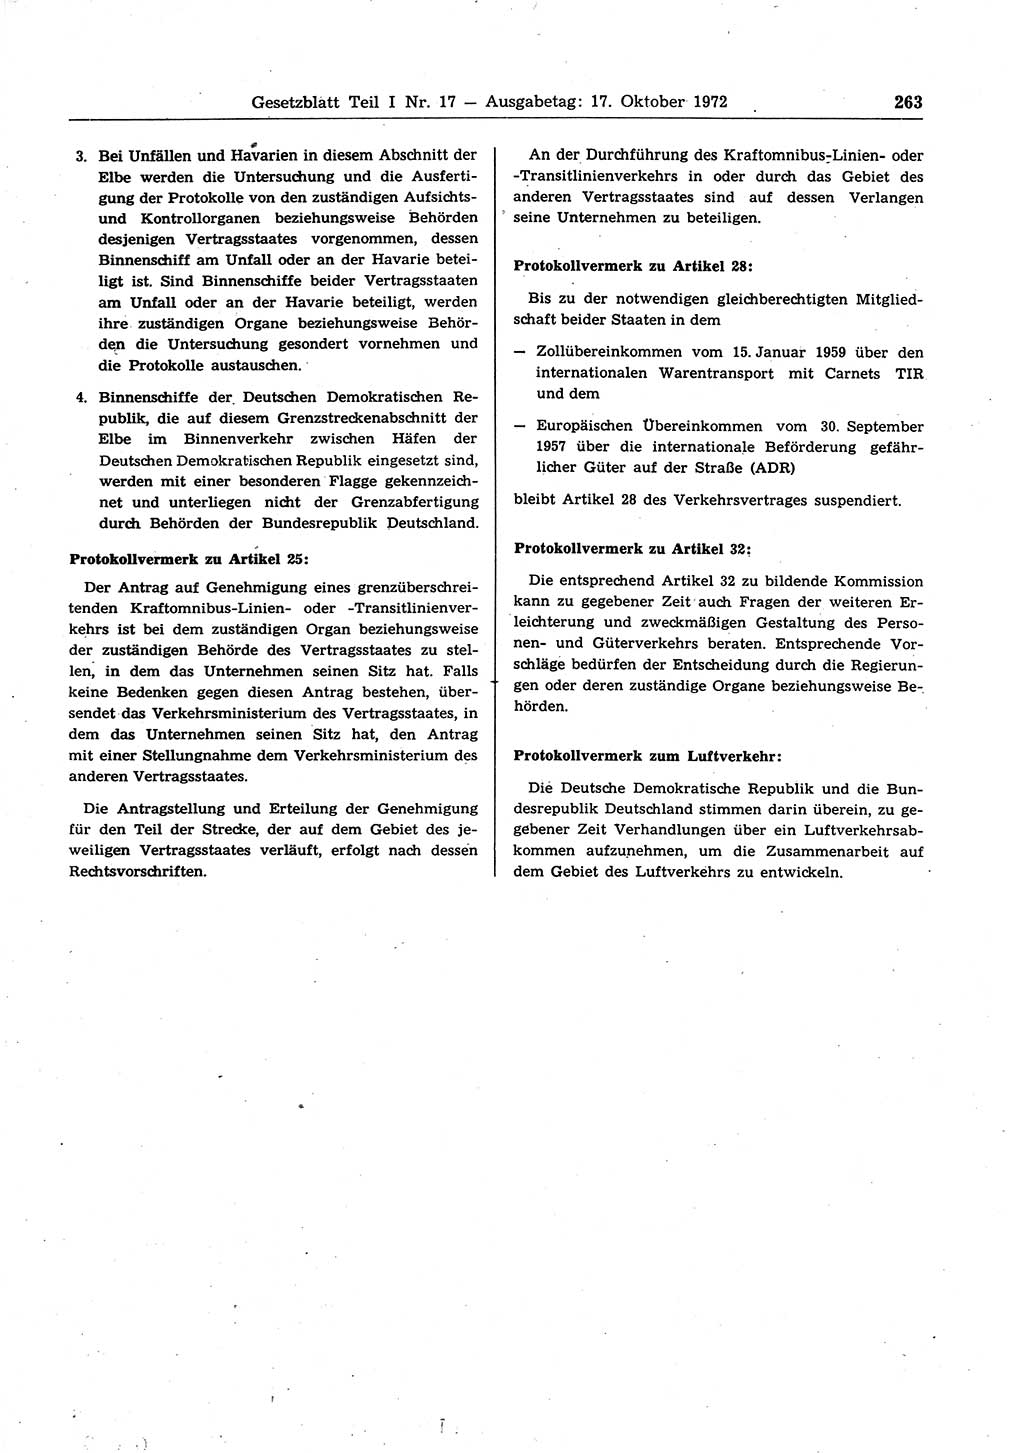 Gesetzblatt (GBl.) der Deutschen Demokratischen Republik (DDR) Teil Ⅰ 1972, Seite 263 (GBl. DDR Ⅰ 1972, S. 263)